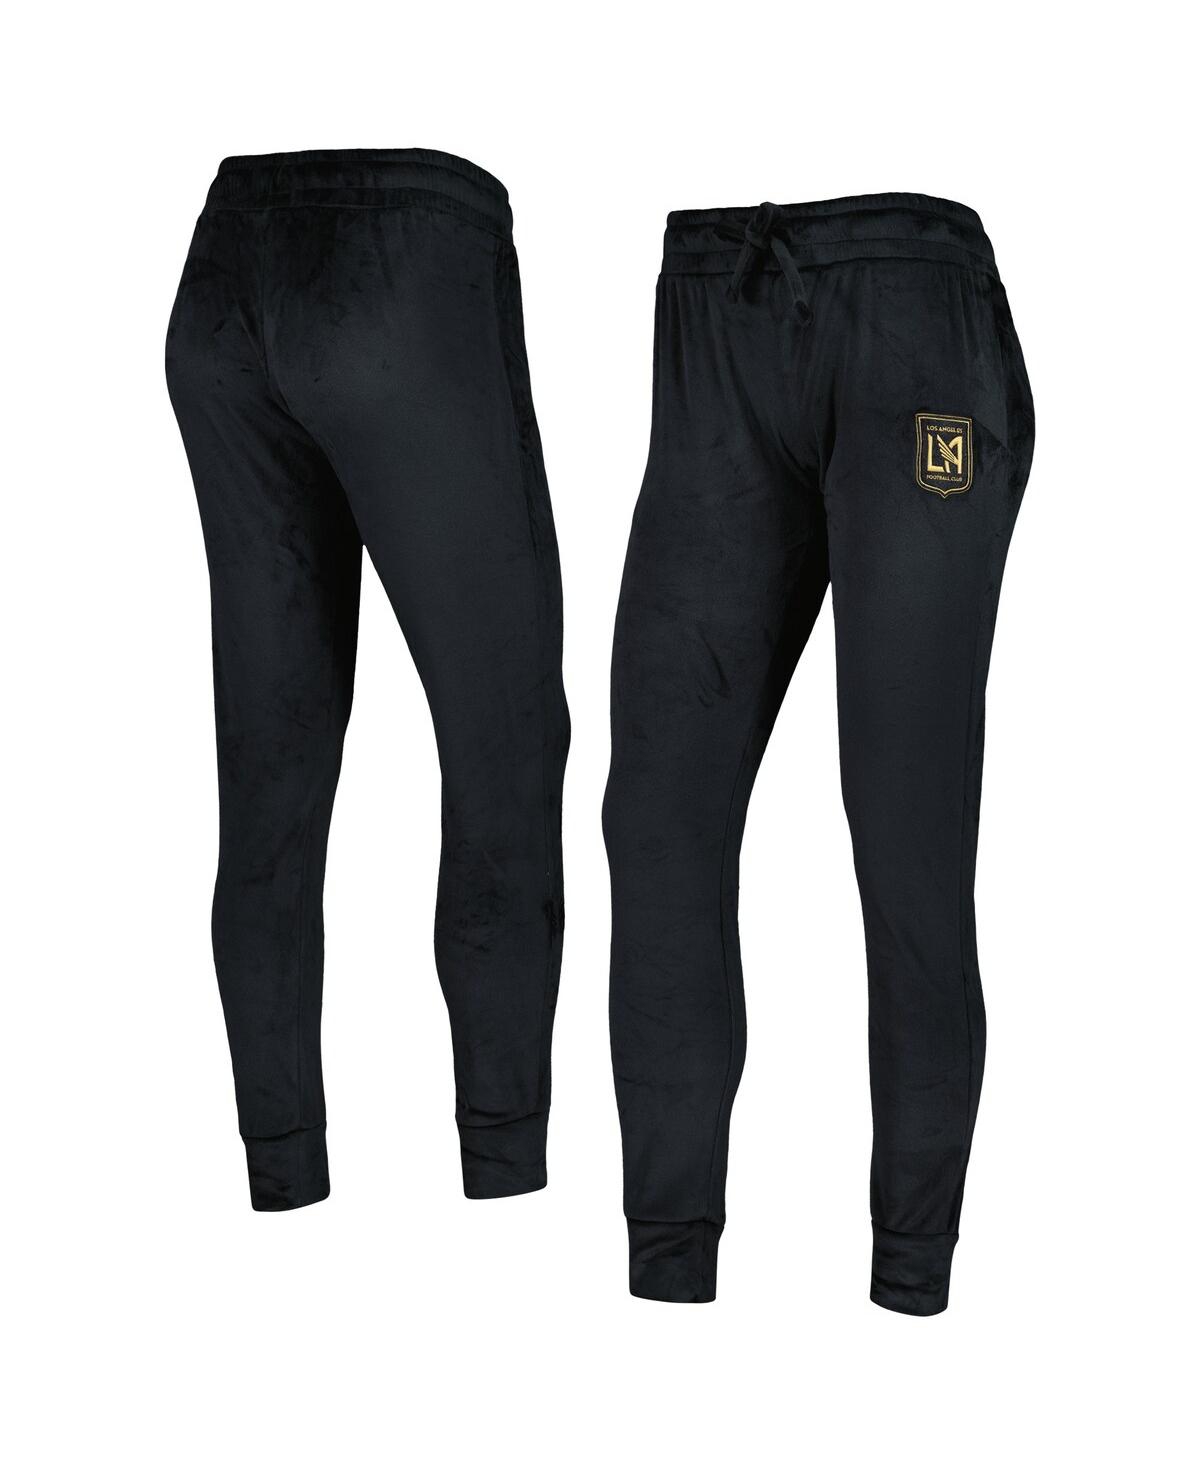 Shop Concepts Sport Women's  Black Lafc Intermission Velour Cuffed Pants